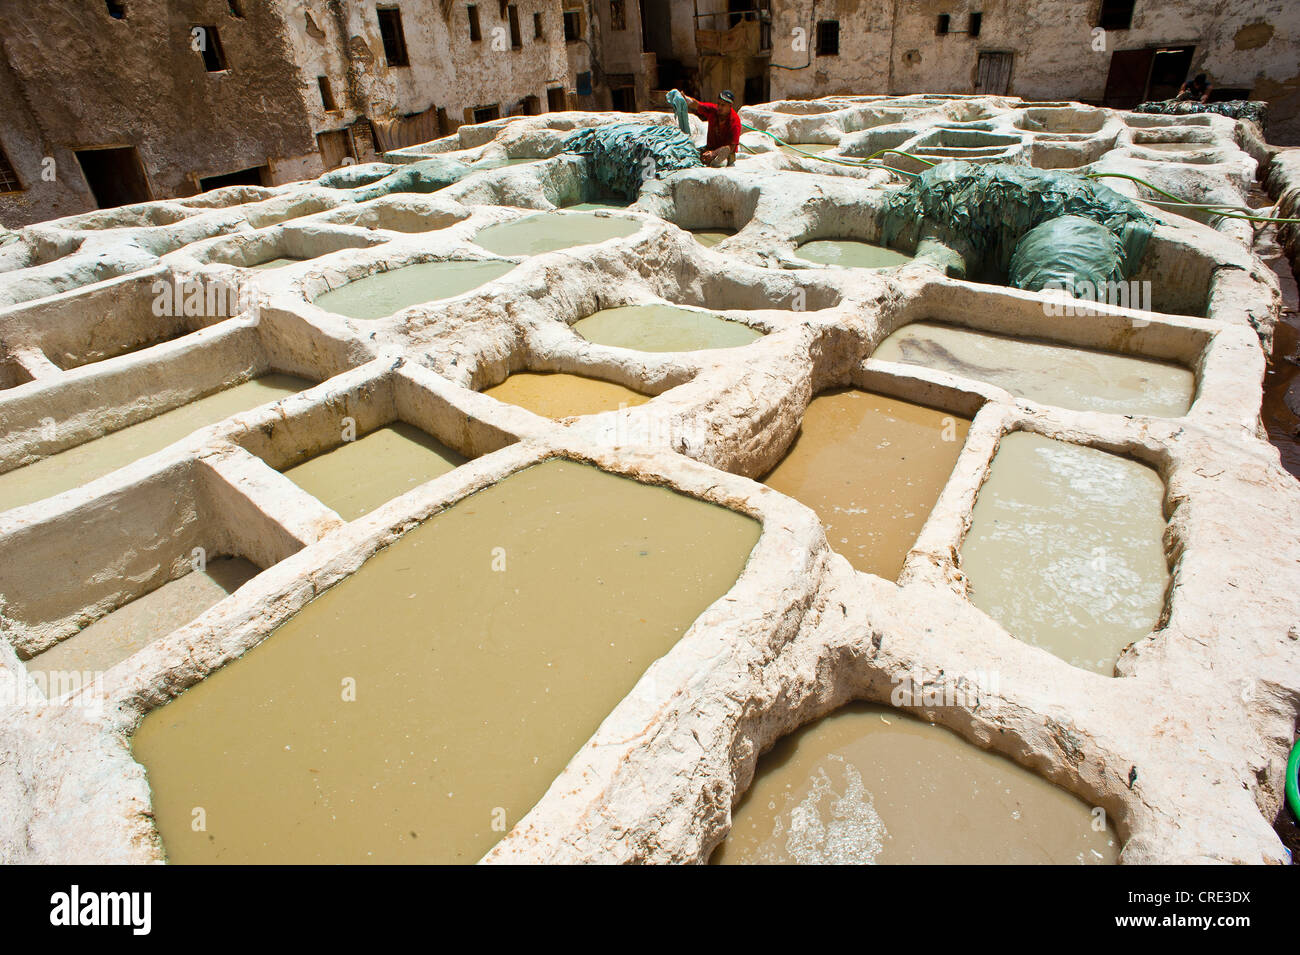 Traditionellen Gerbereien mit Solarium, Bottiche, Kalk, Altstadt oder Medina von Fes oder Fes, UNESCO World Heritage Site, Marokko, Afrika Stockfoto